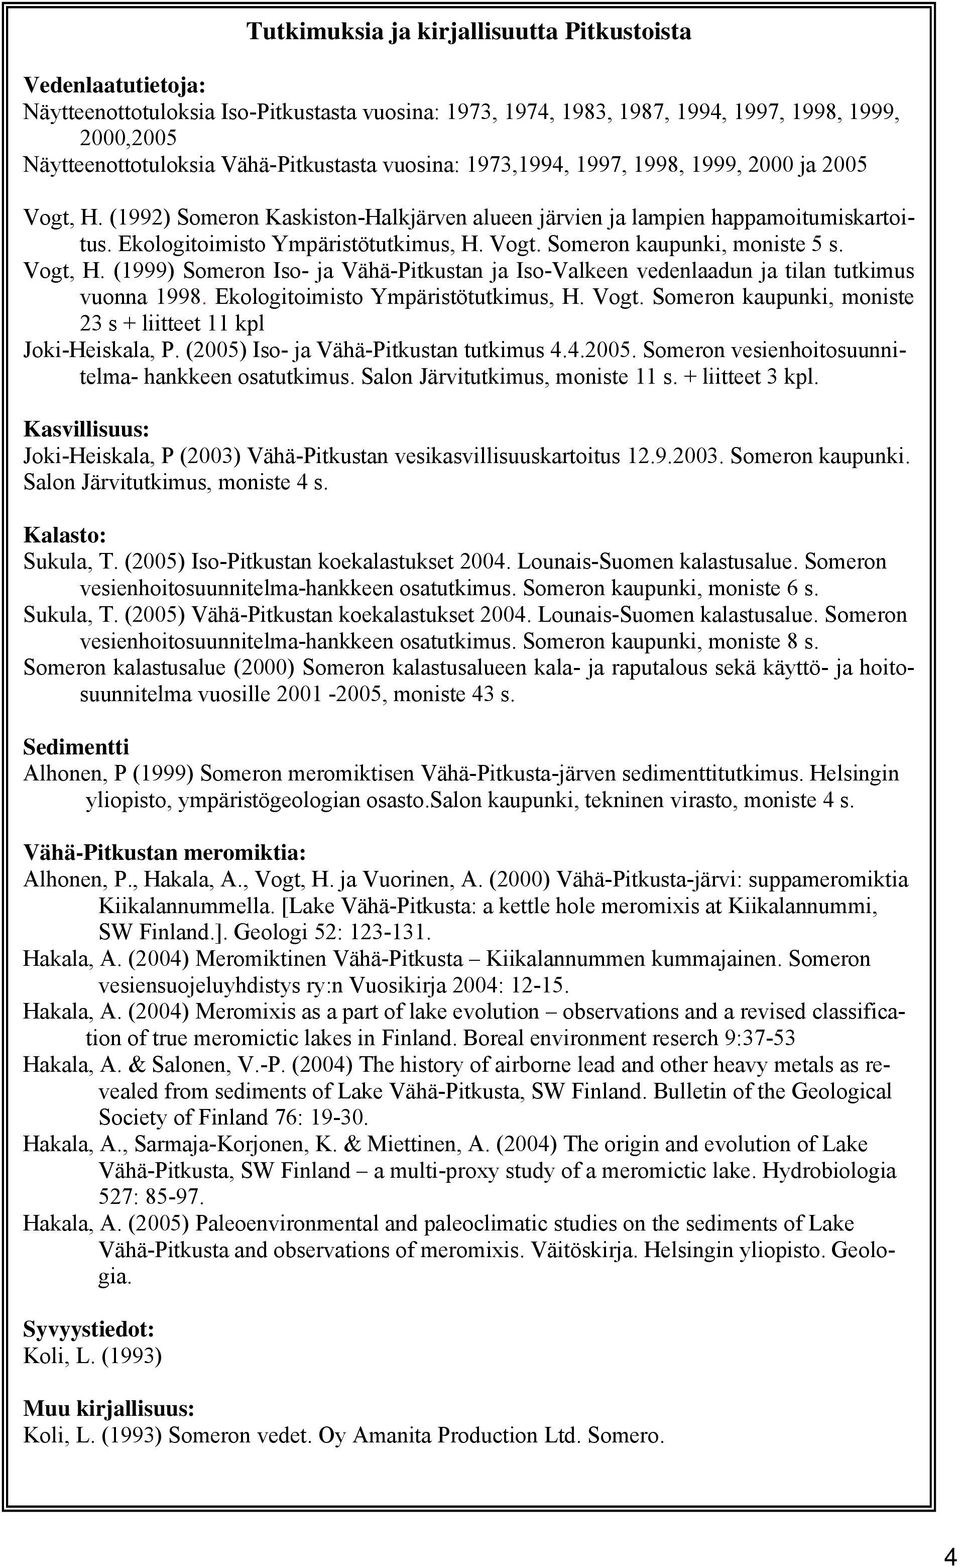 Vogt. Someron kaupunki, moniste 5 s. Vogt, H. (1999) Someron Iso- ja Vähä-Pitkustan ja Iso-Valkeen vedenlaadun ja tilan tutkimus vuonna 1998. Ekologitoimisto Ympäristötutkimus, H. Vogt. Someron kaupunki, moniste 23 s + liitteet 11 kpl Joki-Heiskala, P.